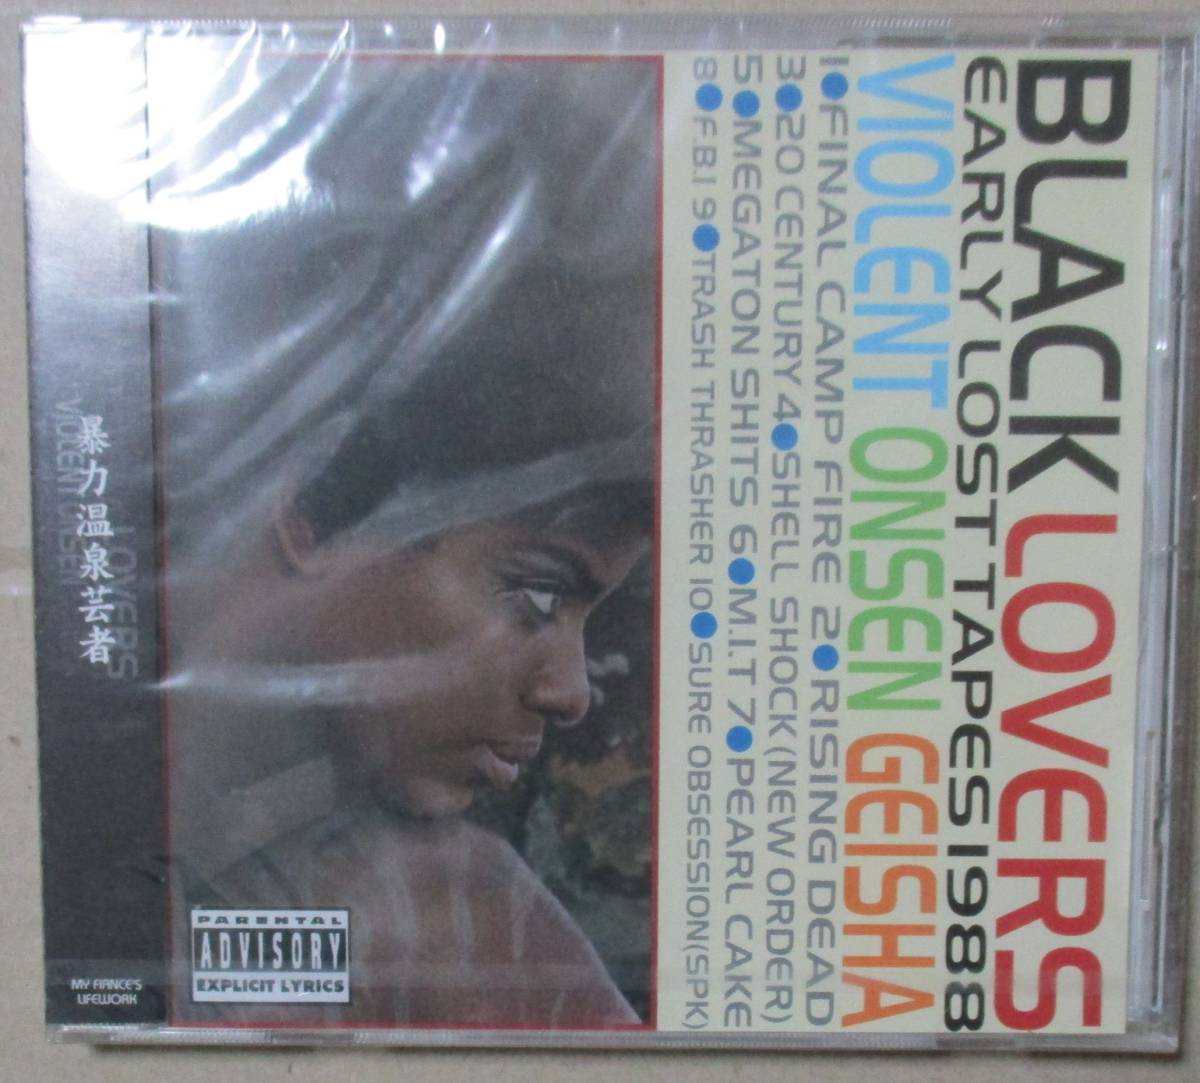 . сила горячие источники гейша / Black Lovers ~ Early Lost Tapes 1988 (CD) нераспечатанный 